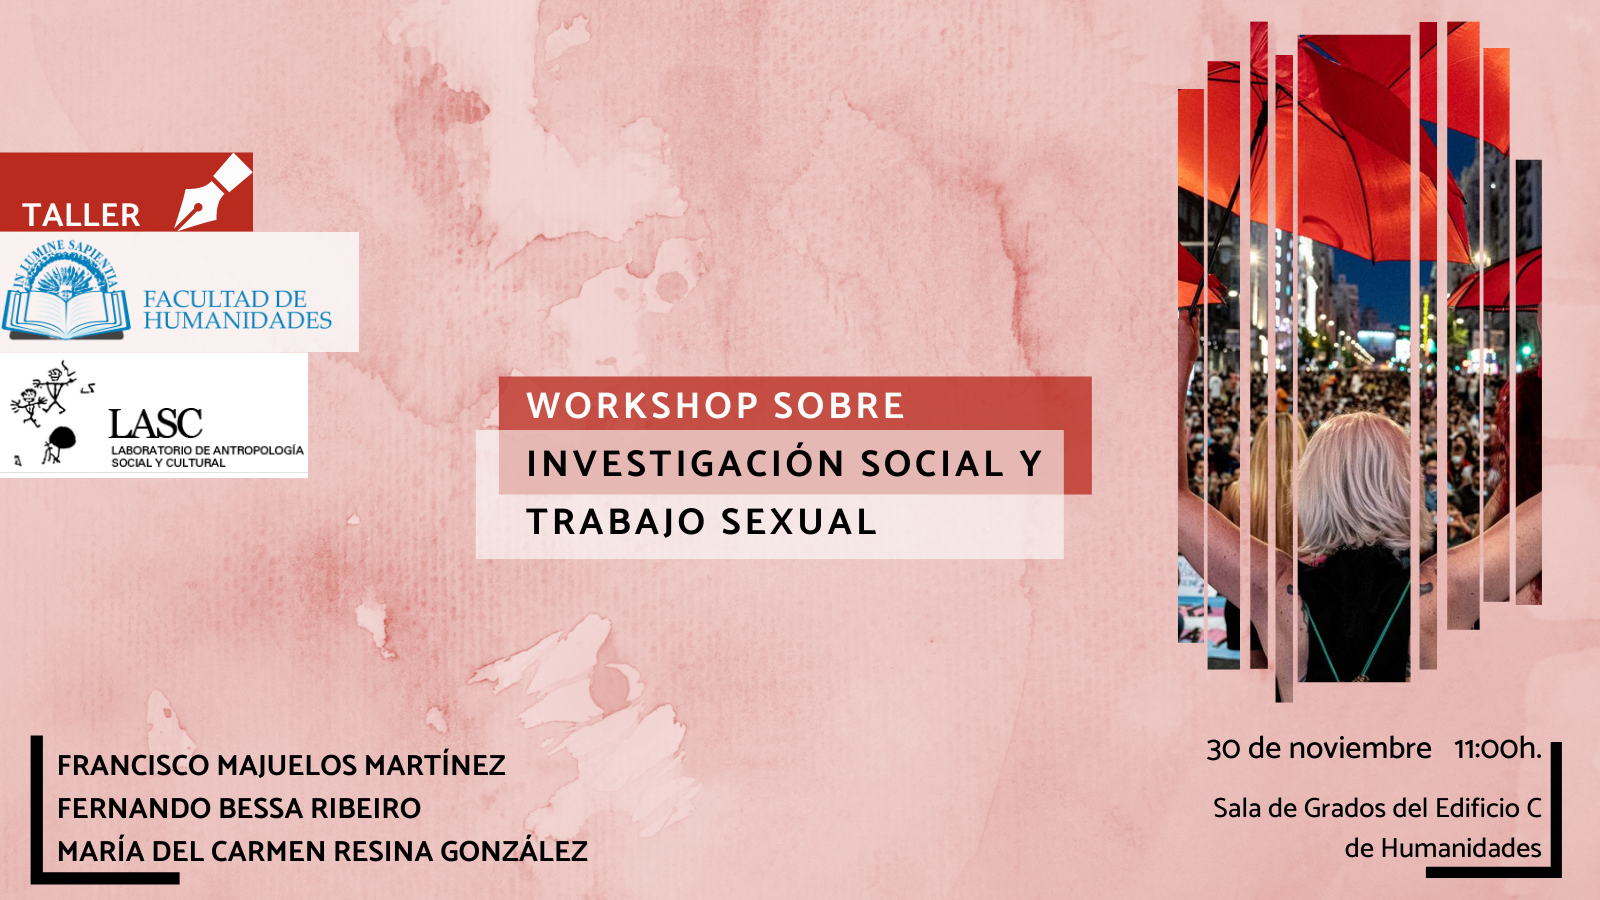 La Facultad de Humanidades y Laboratorio de Antropología Social y Cultural de la Universidad de Almería organizan la actividad titulada "workshop sobre investigación social y trabajo sexual‘’.